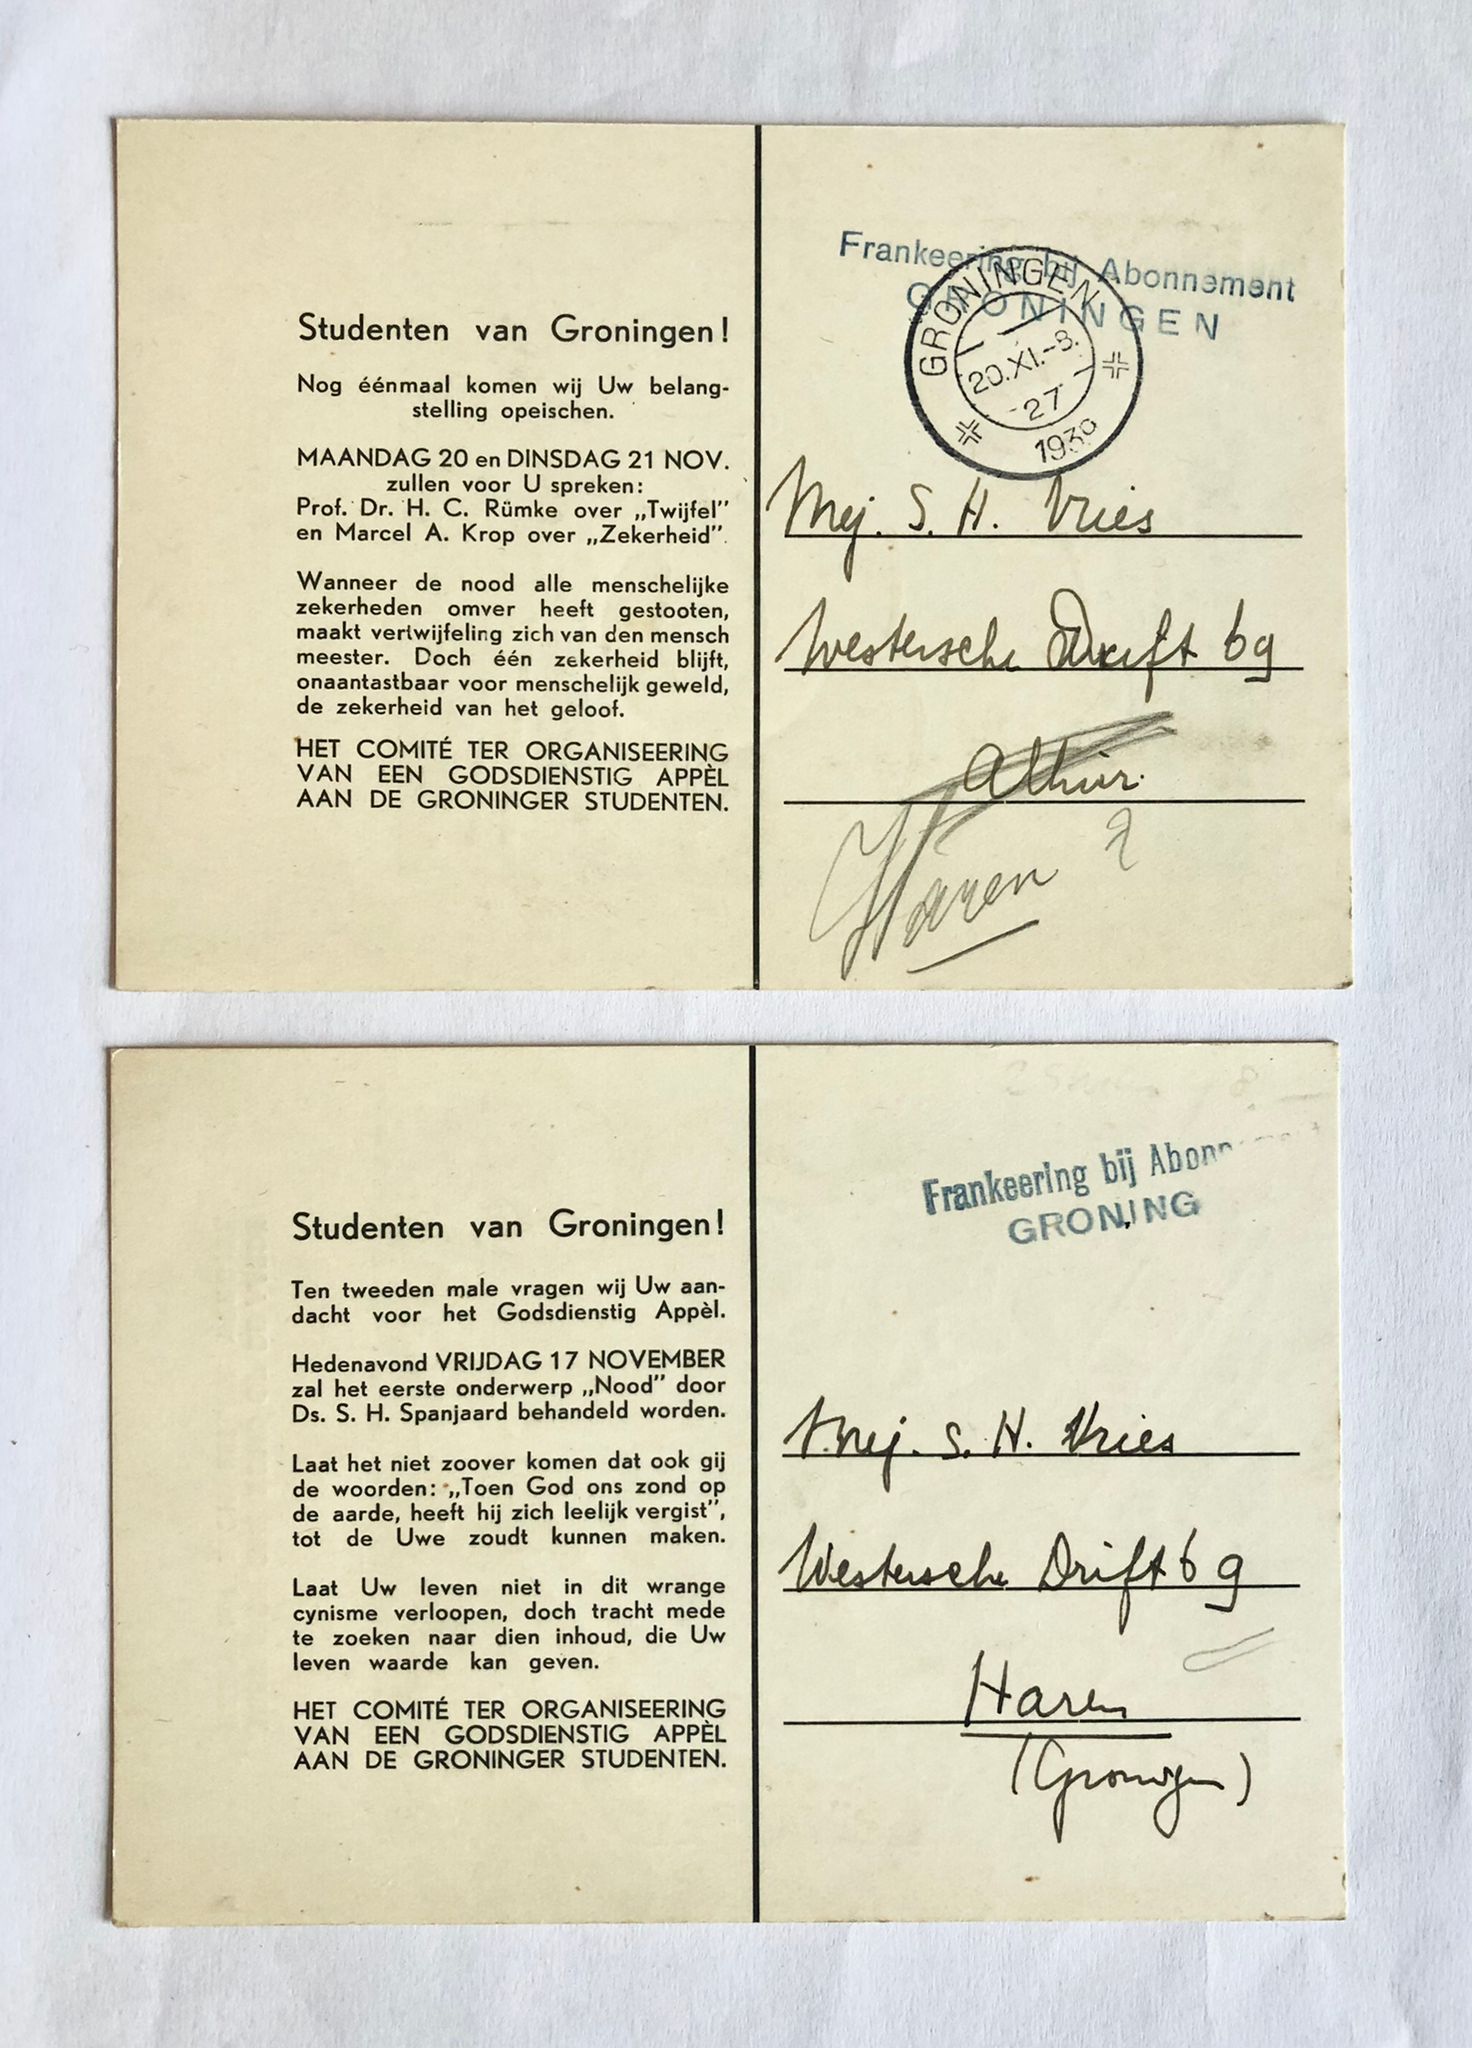 [Groningen] Twee ansichtkaarten gestuurd naar S. N. de Vries (Westersche Drift 69 Haren, Groningen), aan de Studenten van Groningen door het comité van een godsdienstig appèl, 1930.